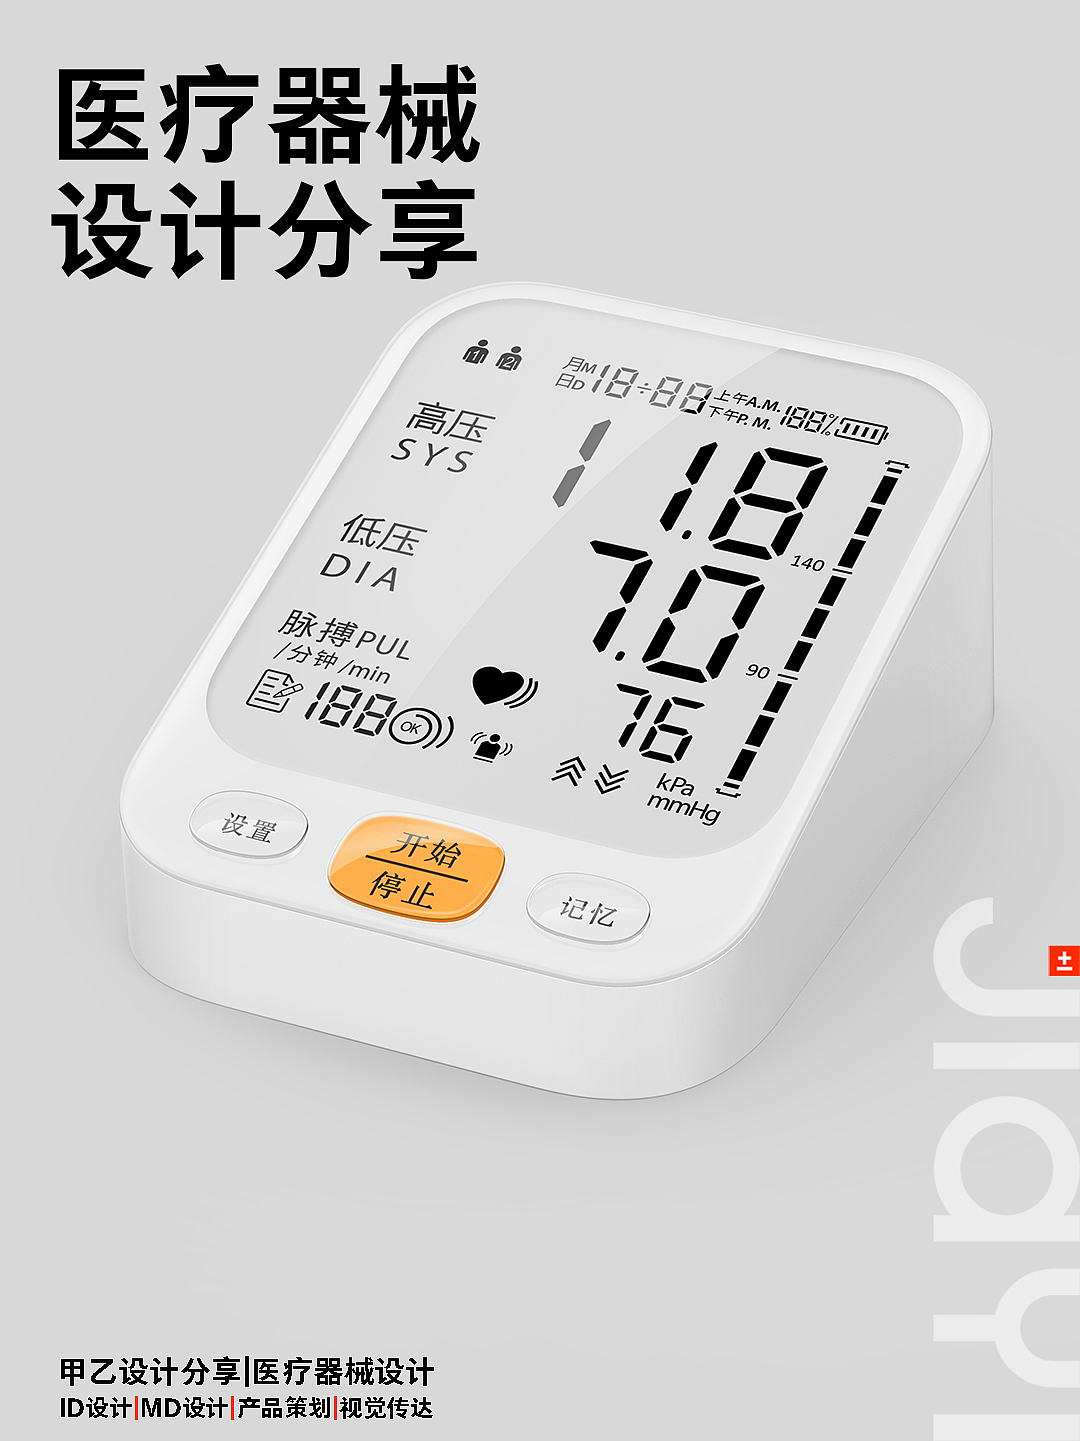 血压计，医疗产品，医疗器械，深圳甲乙设计，电子血压计，